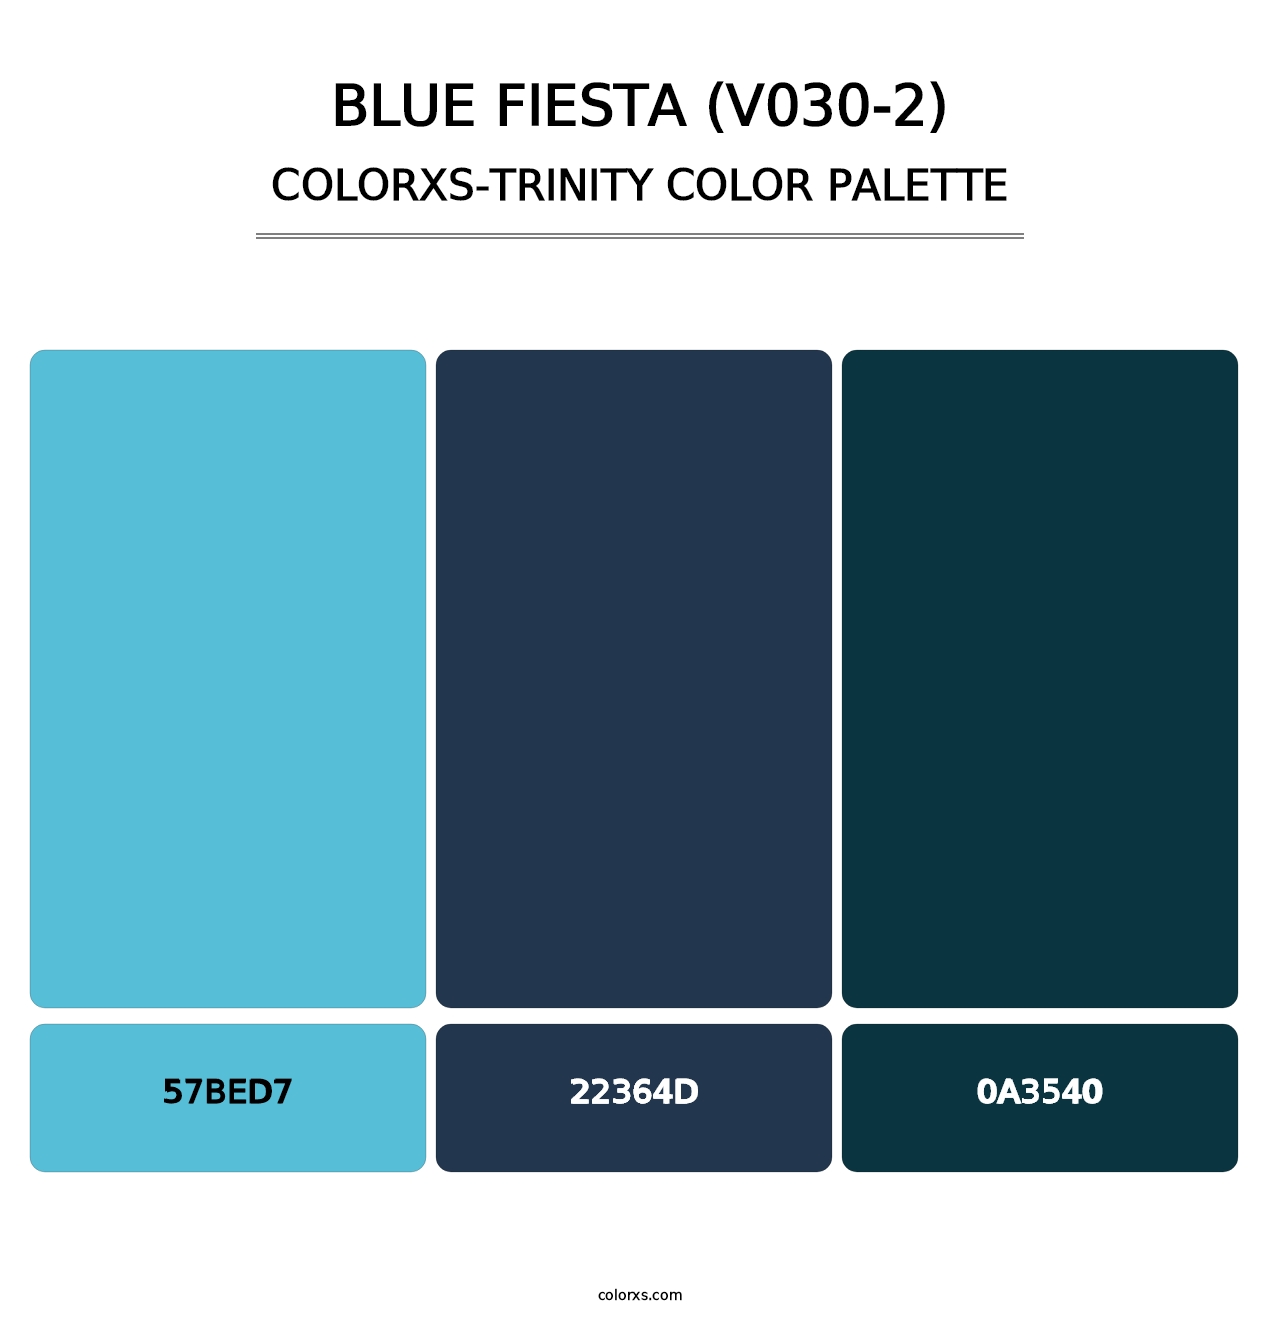 Blue Fiesta (V030-2) - Colorxs Trinity Palette